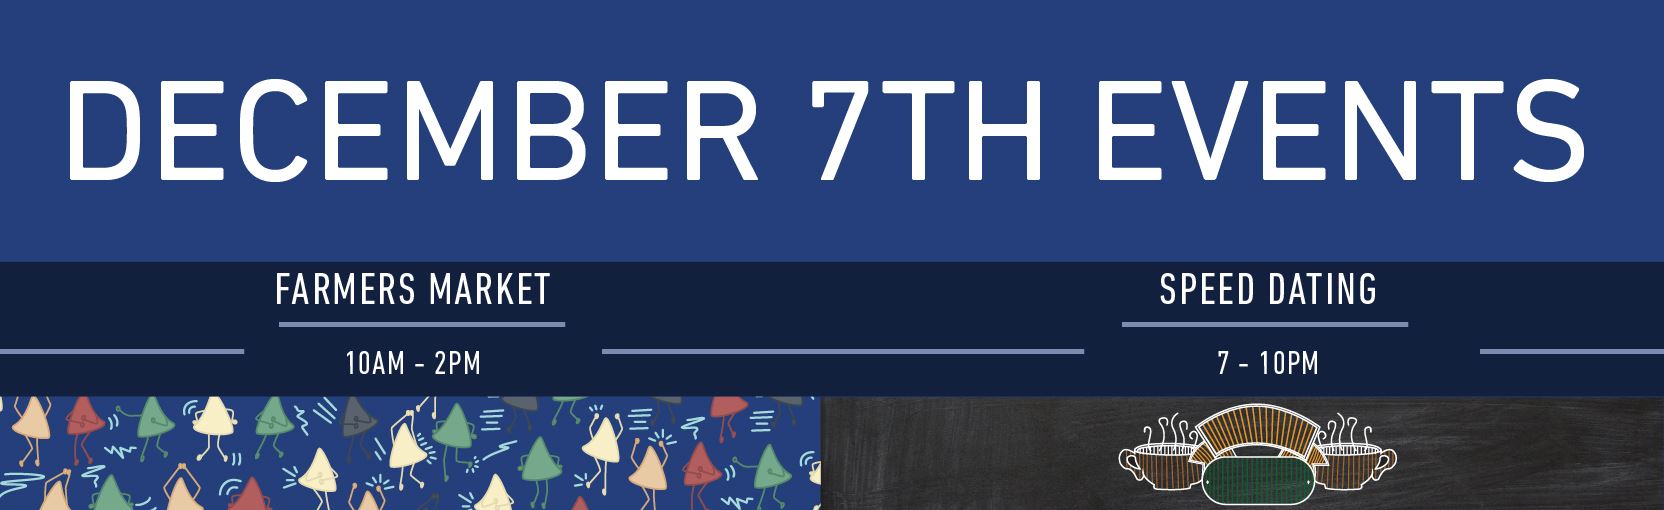 December Events banner